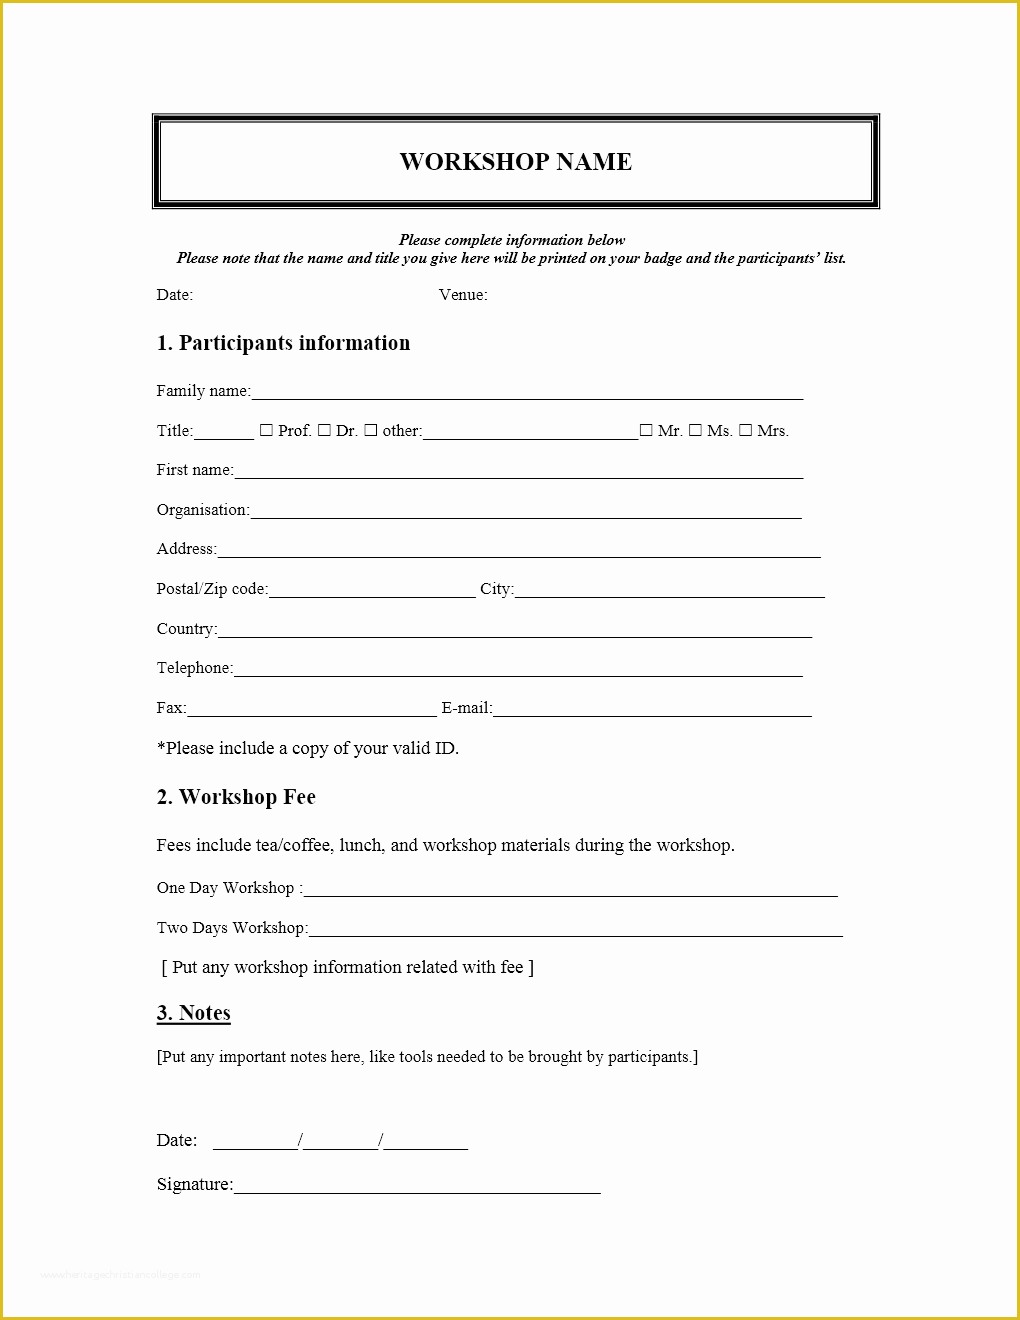 Free Registration form Template Of Workshop Registration form